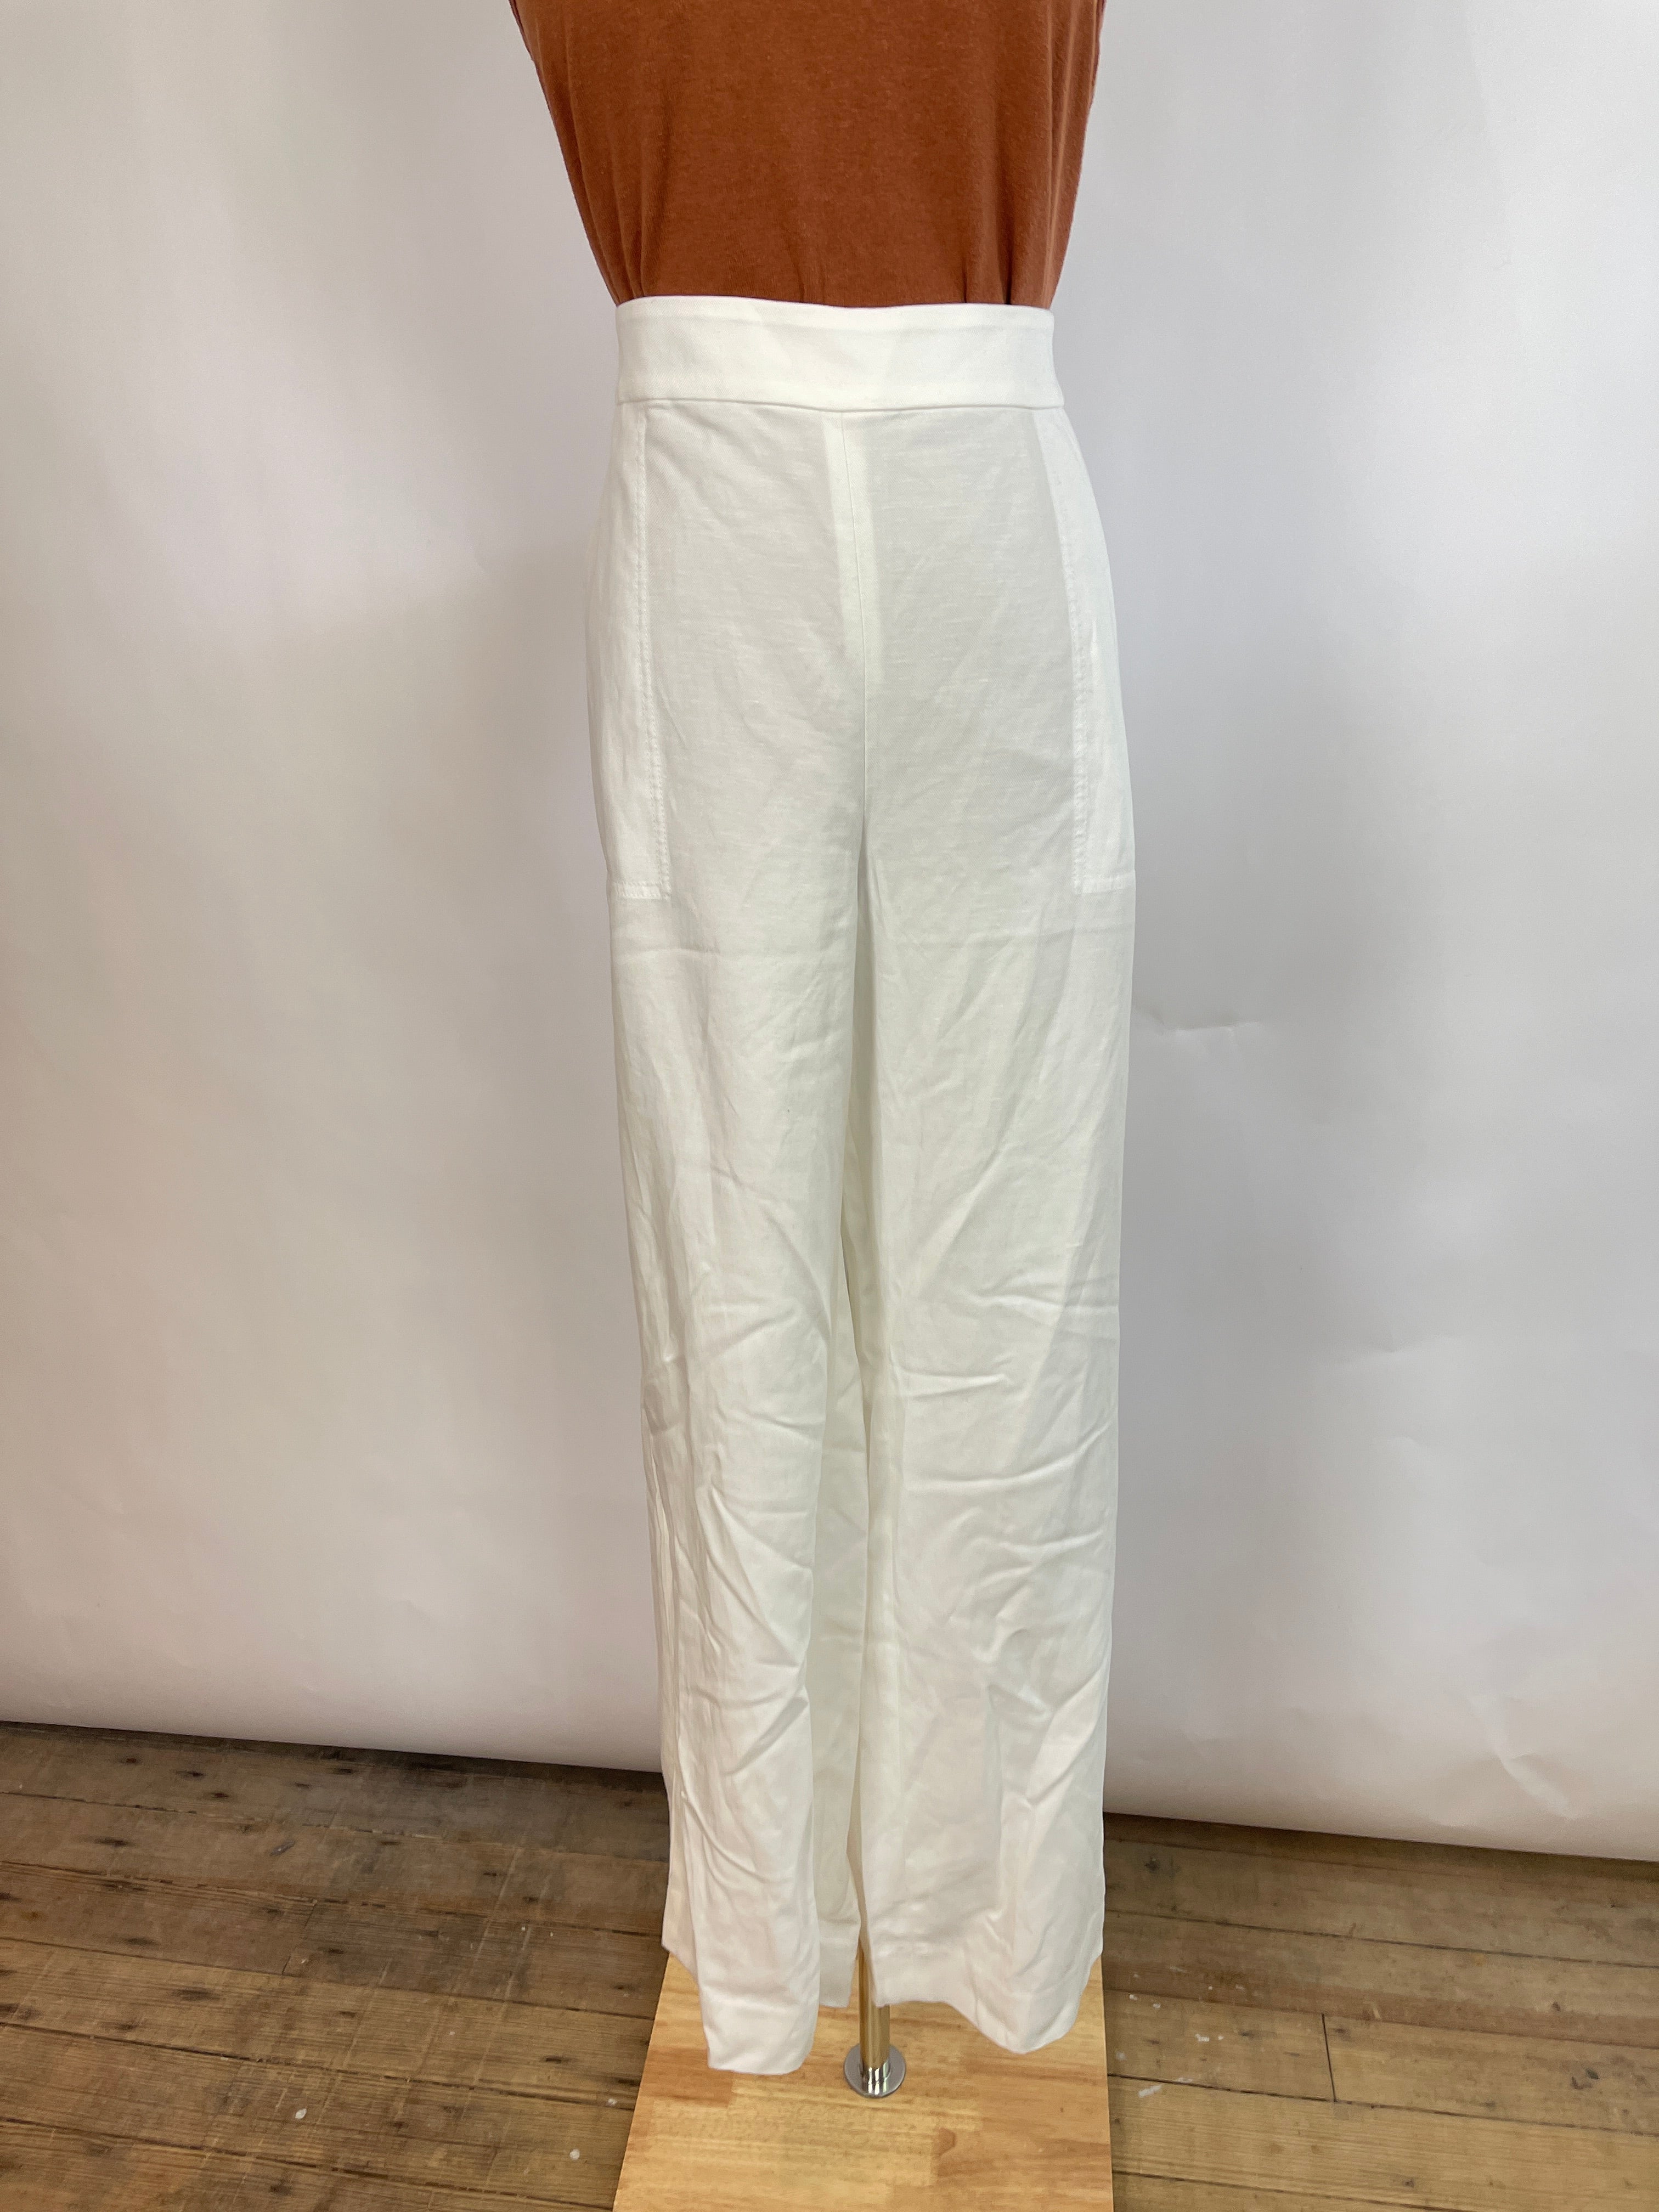 Banana Republic White Trousers (XL)